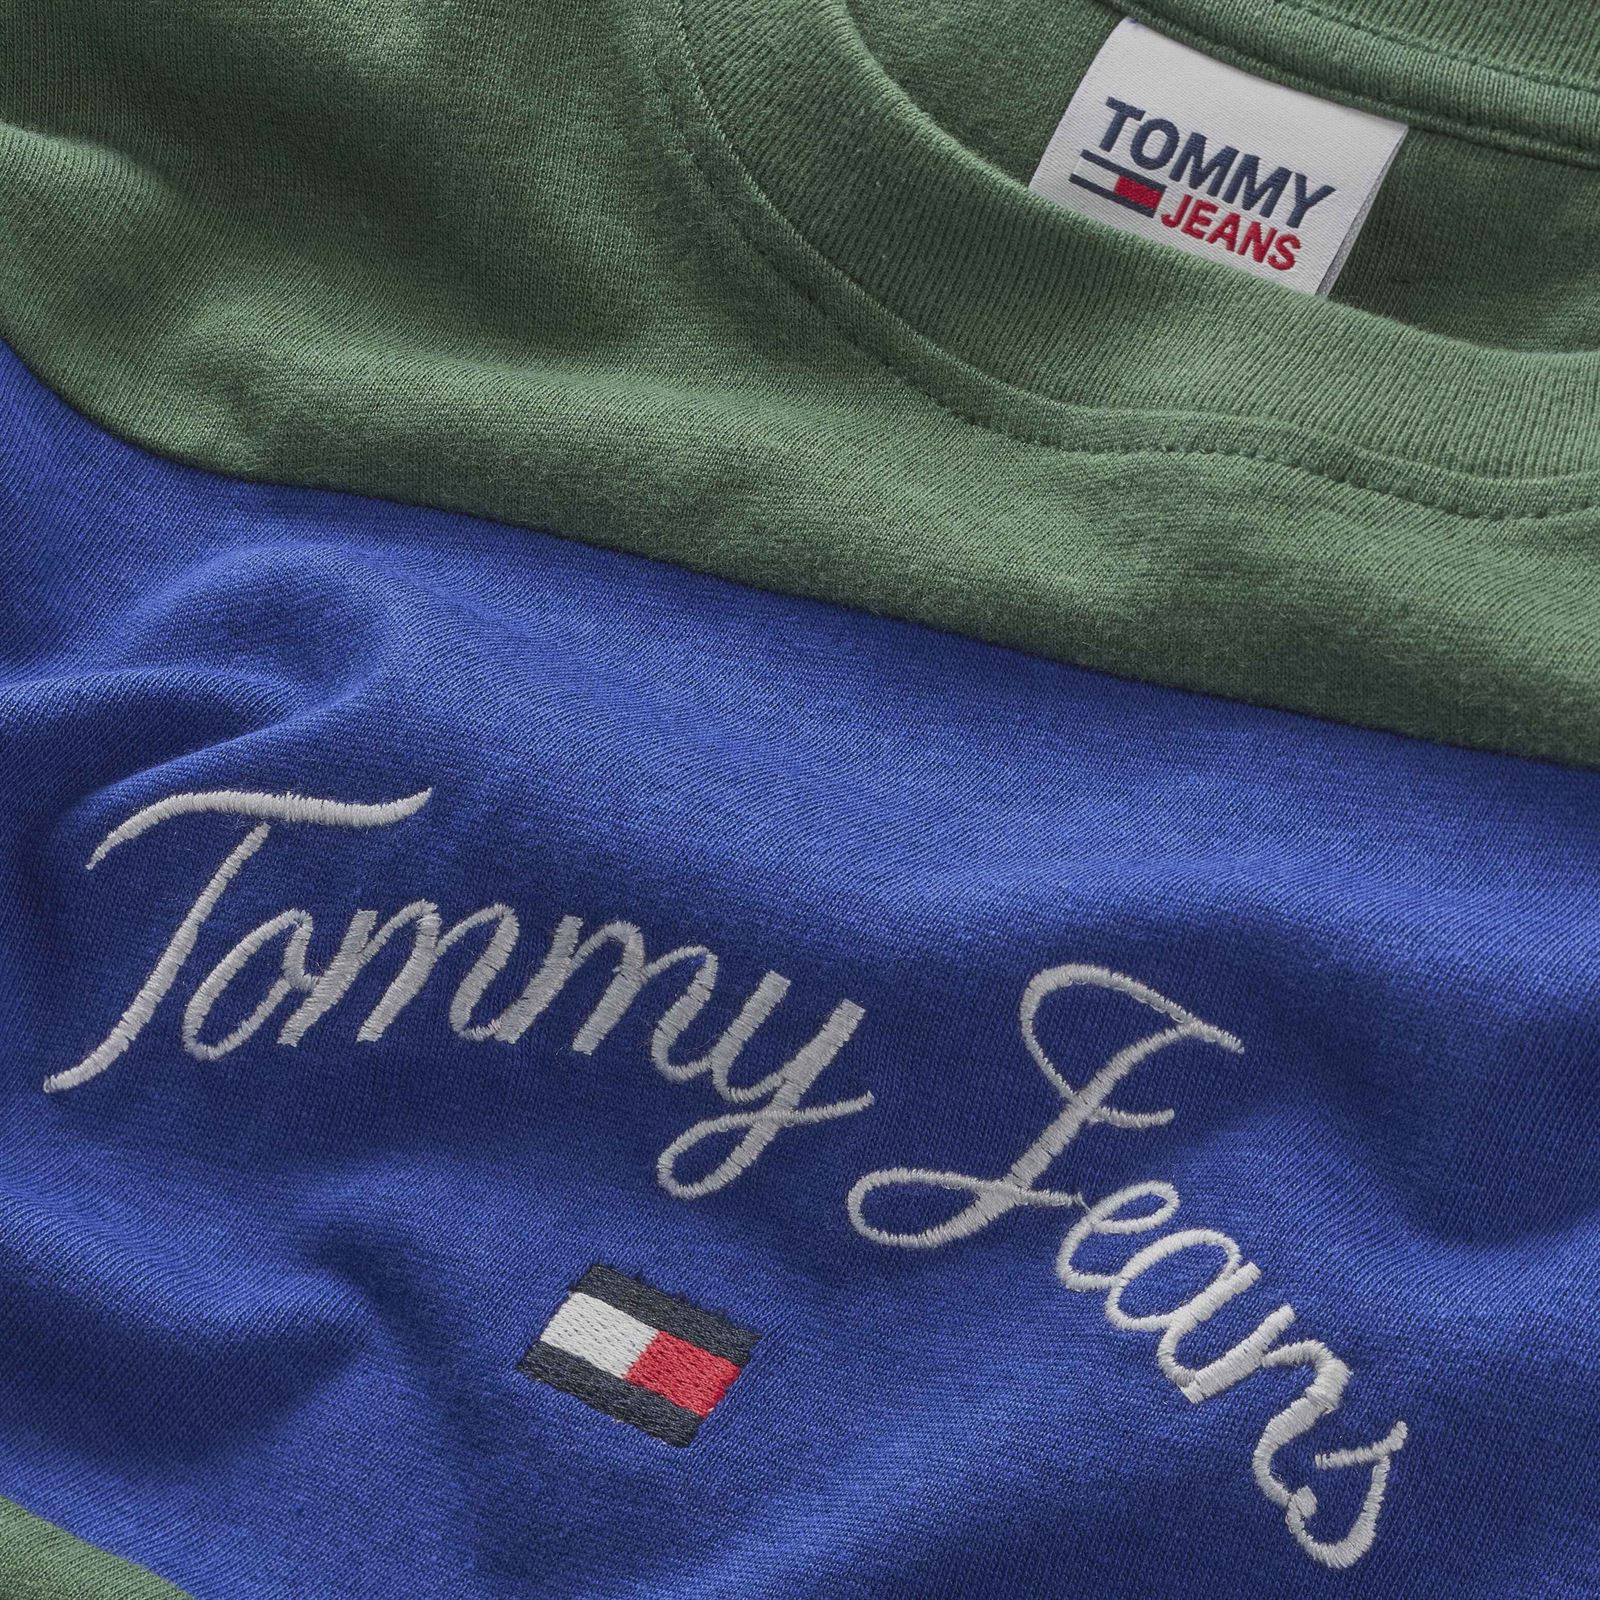 Camiseta TOMMY JEANS DM0DM16836 C9B navy voyage/multi - Imagen 2